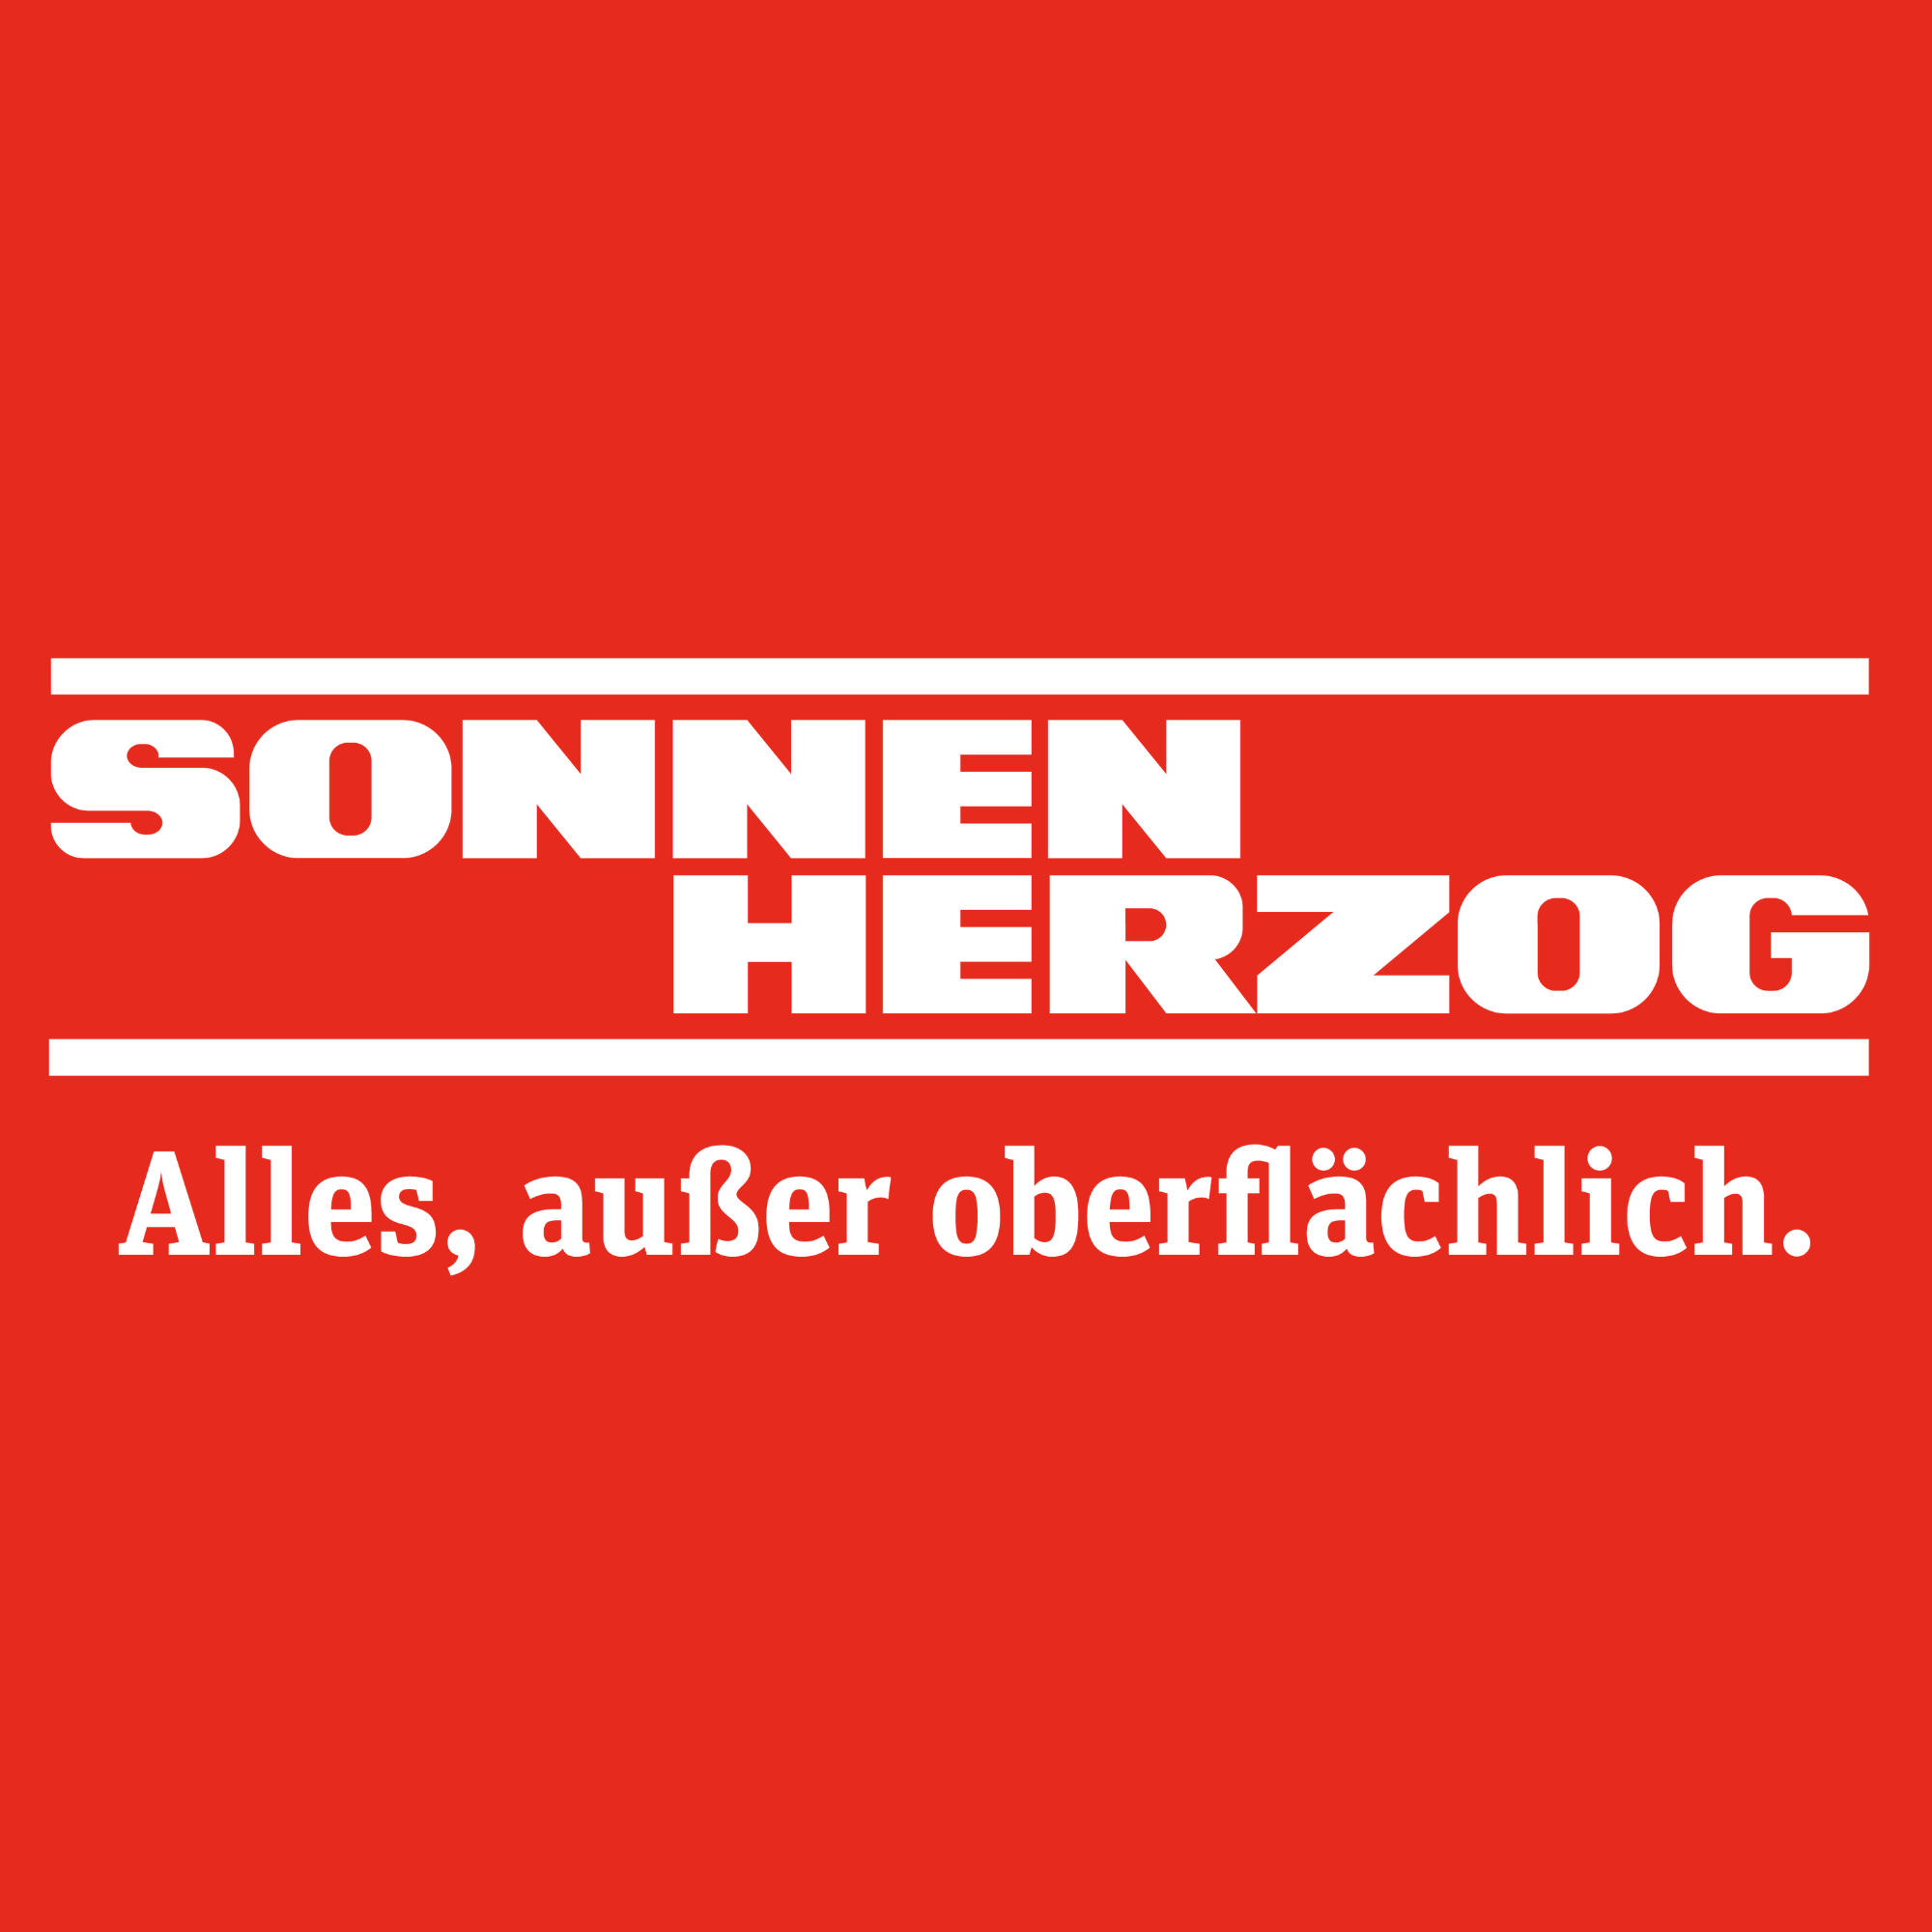 Sonnen Herzog GmbH & Co. KG in Bergisch Gladbach